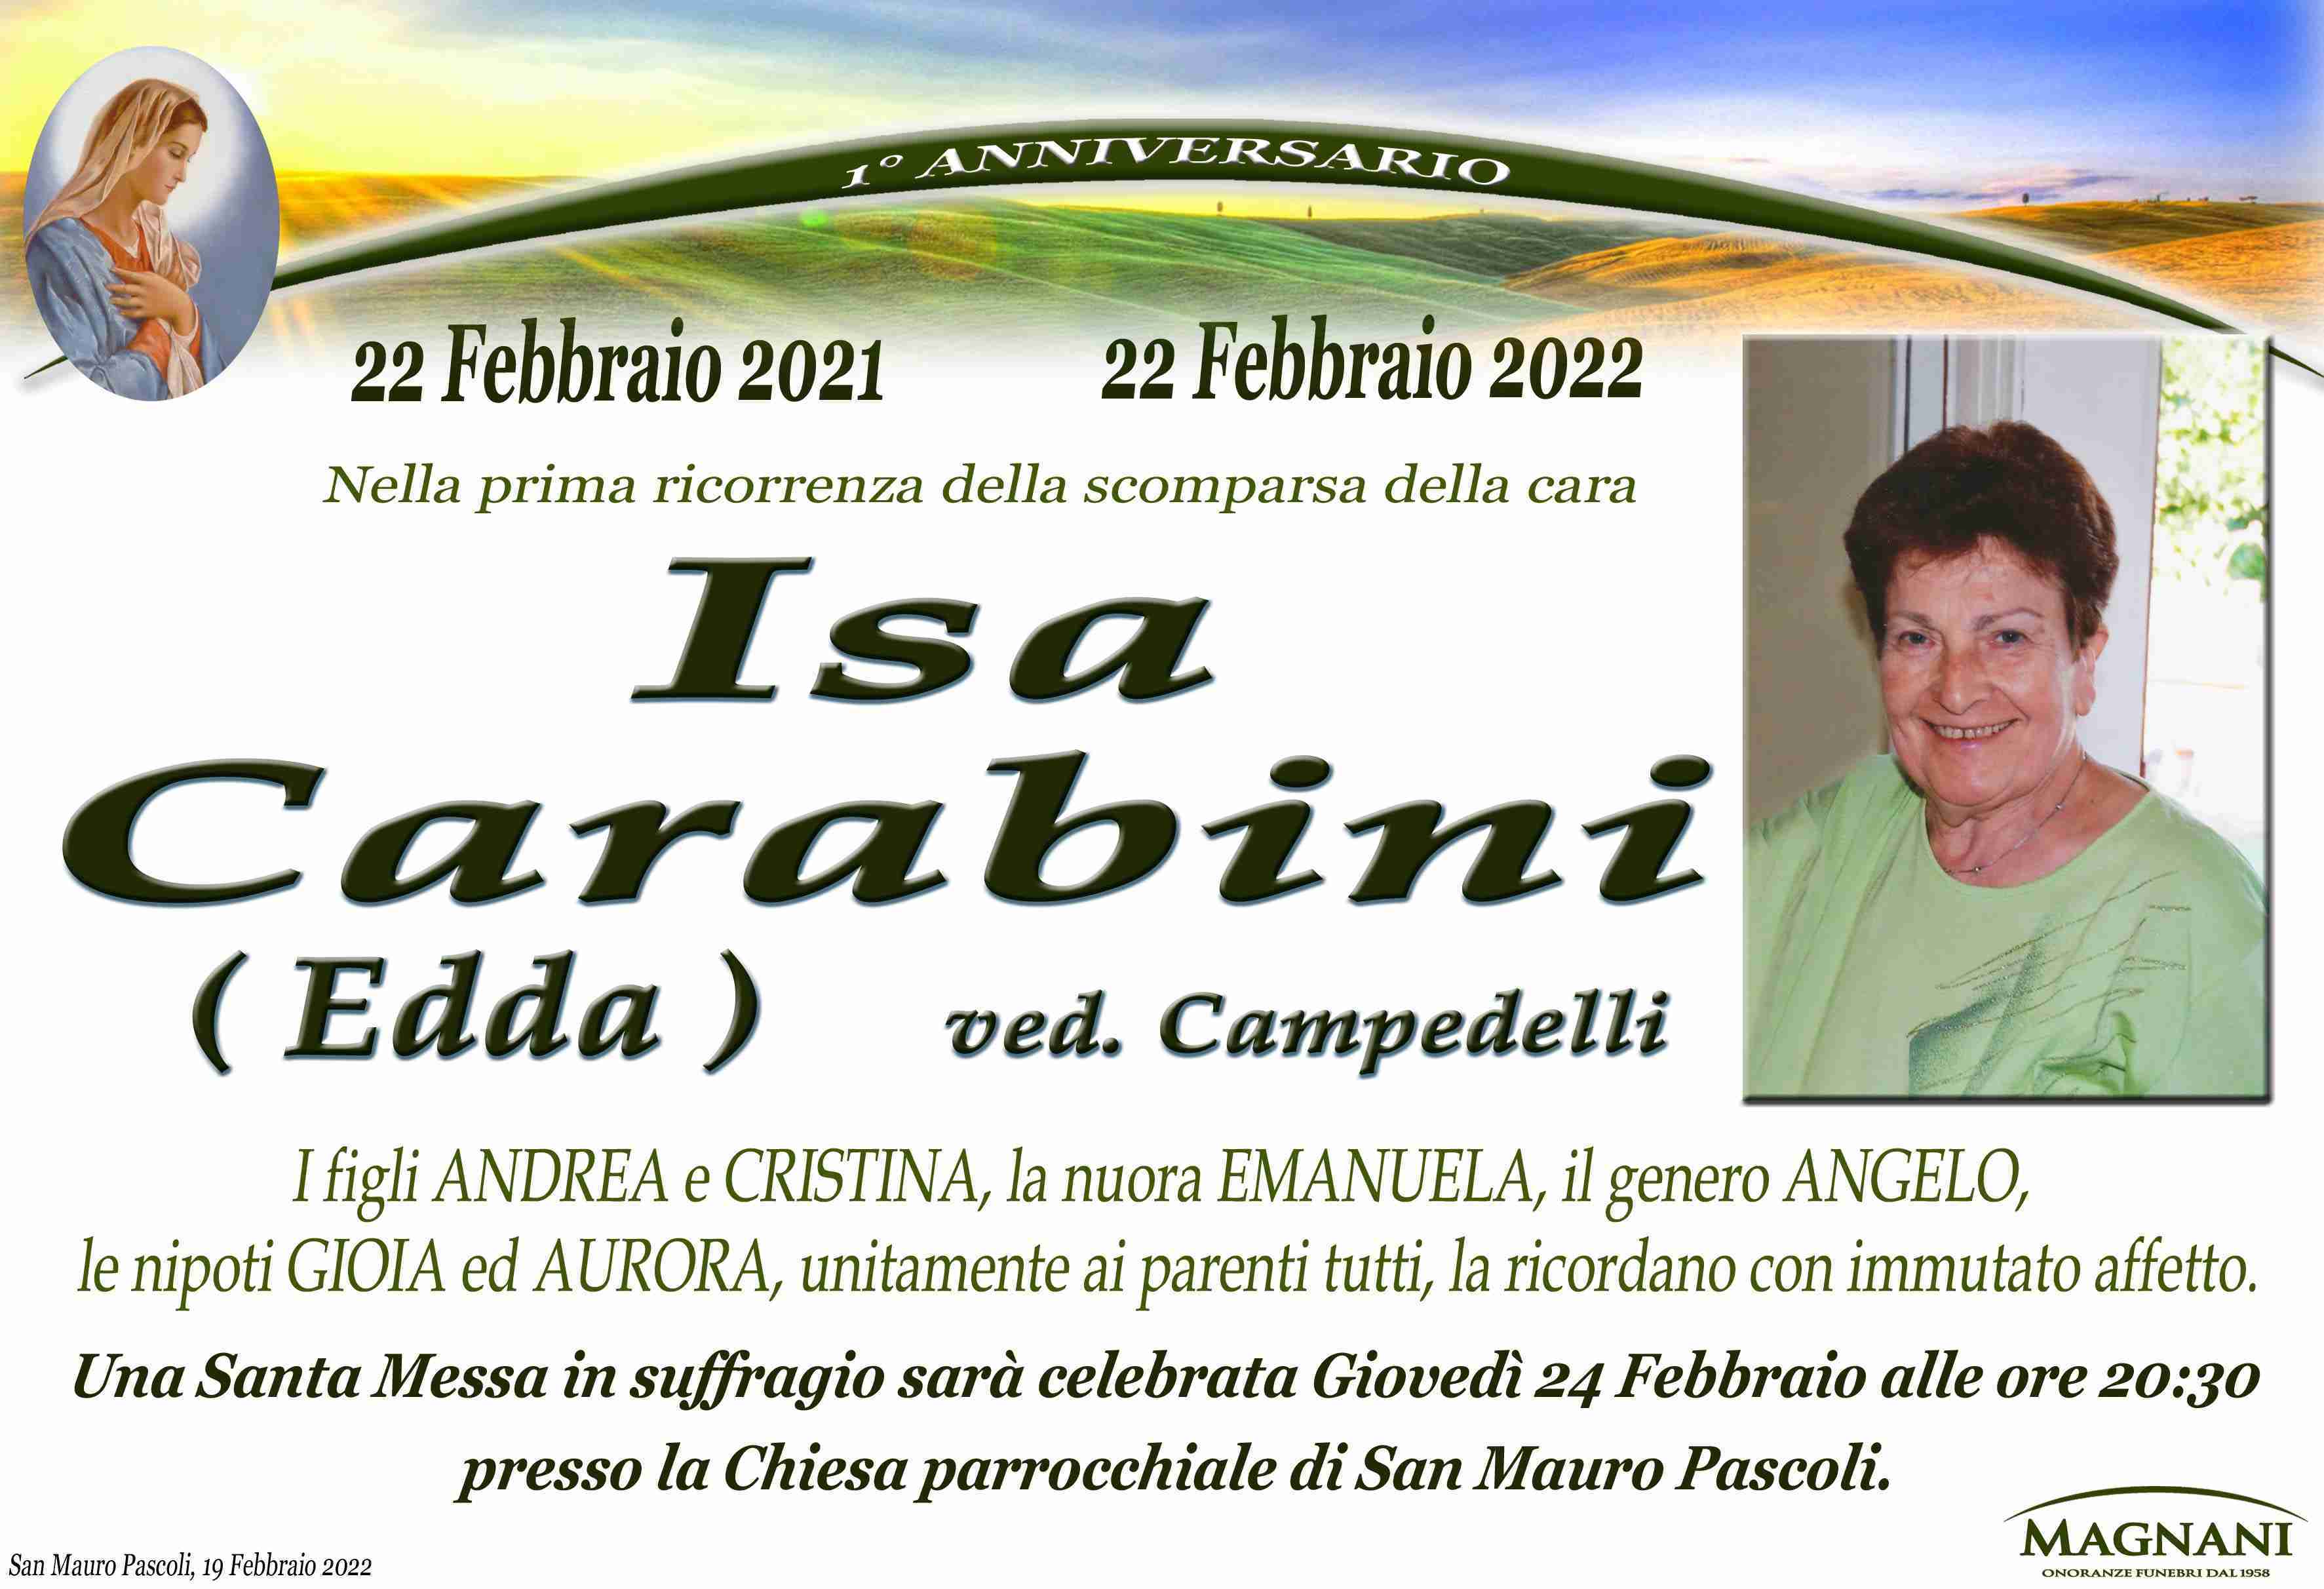 Isa Carabini